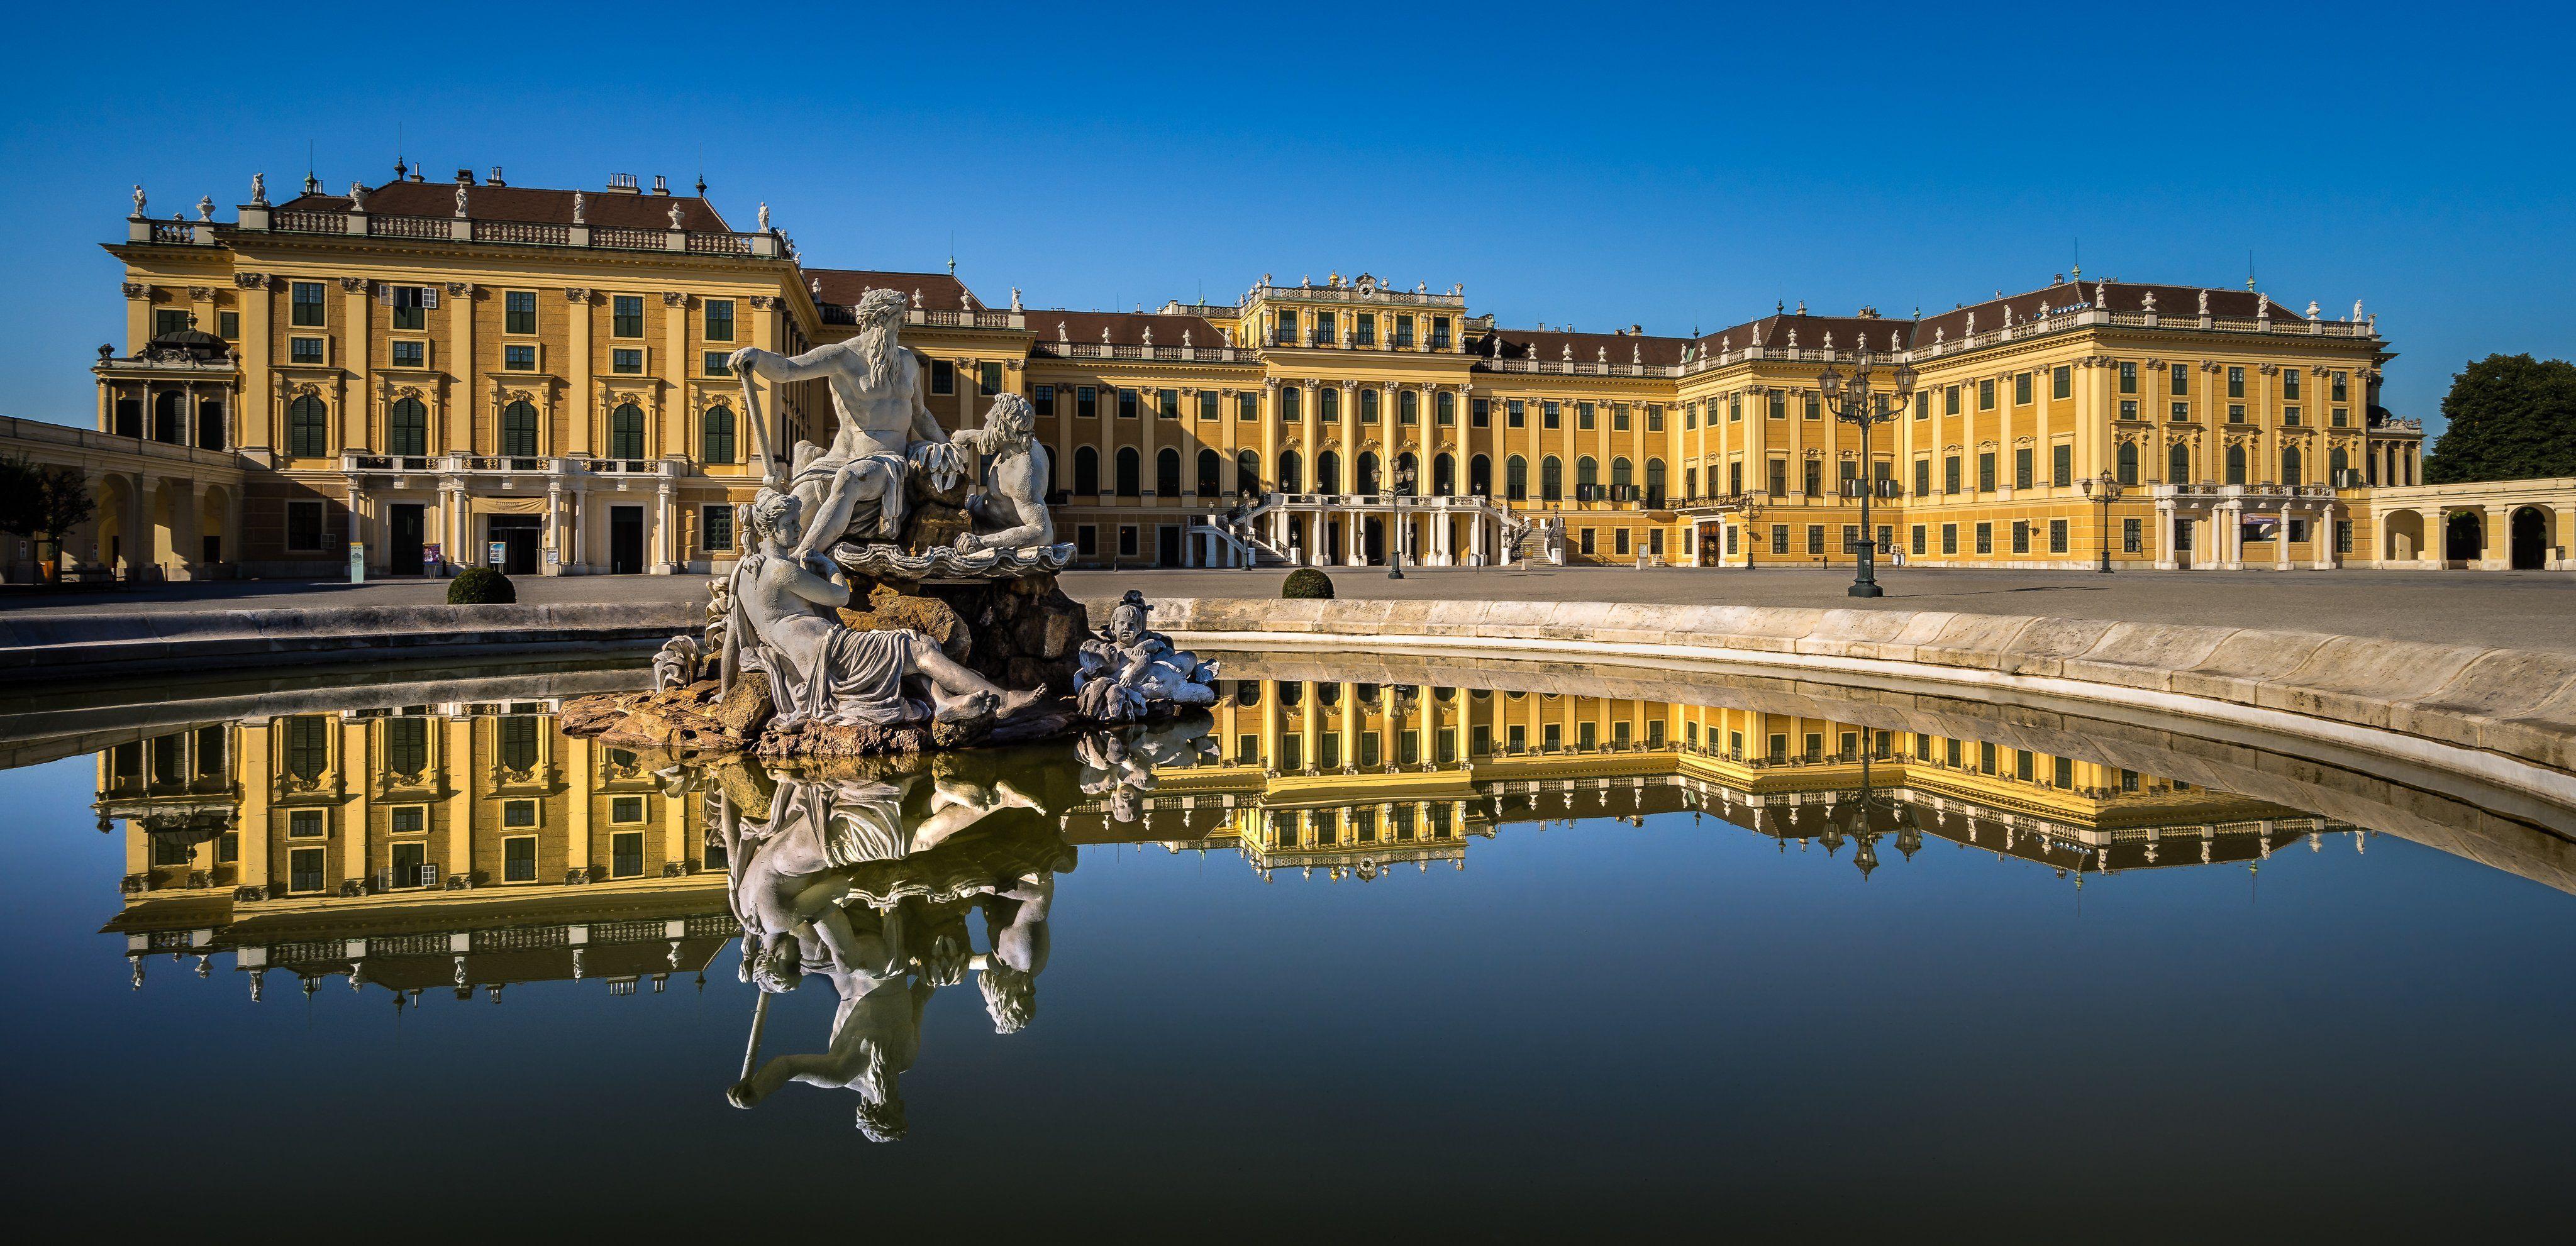 Sculptures Austria Palace Schonbrunn Palace Vienna Cities